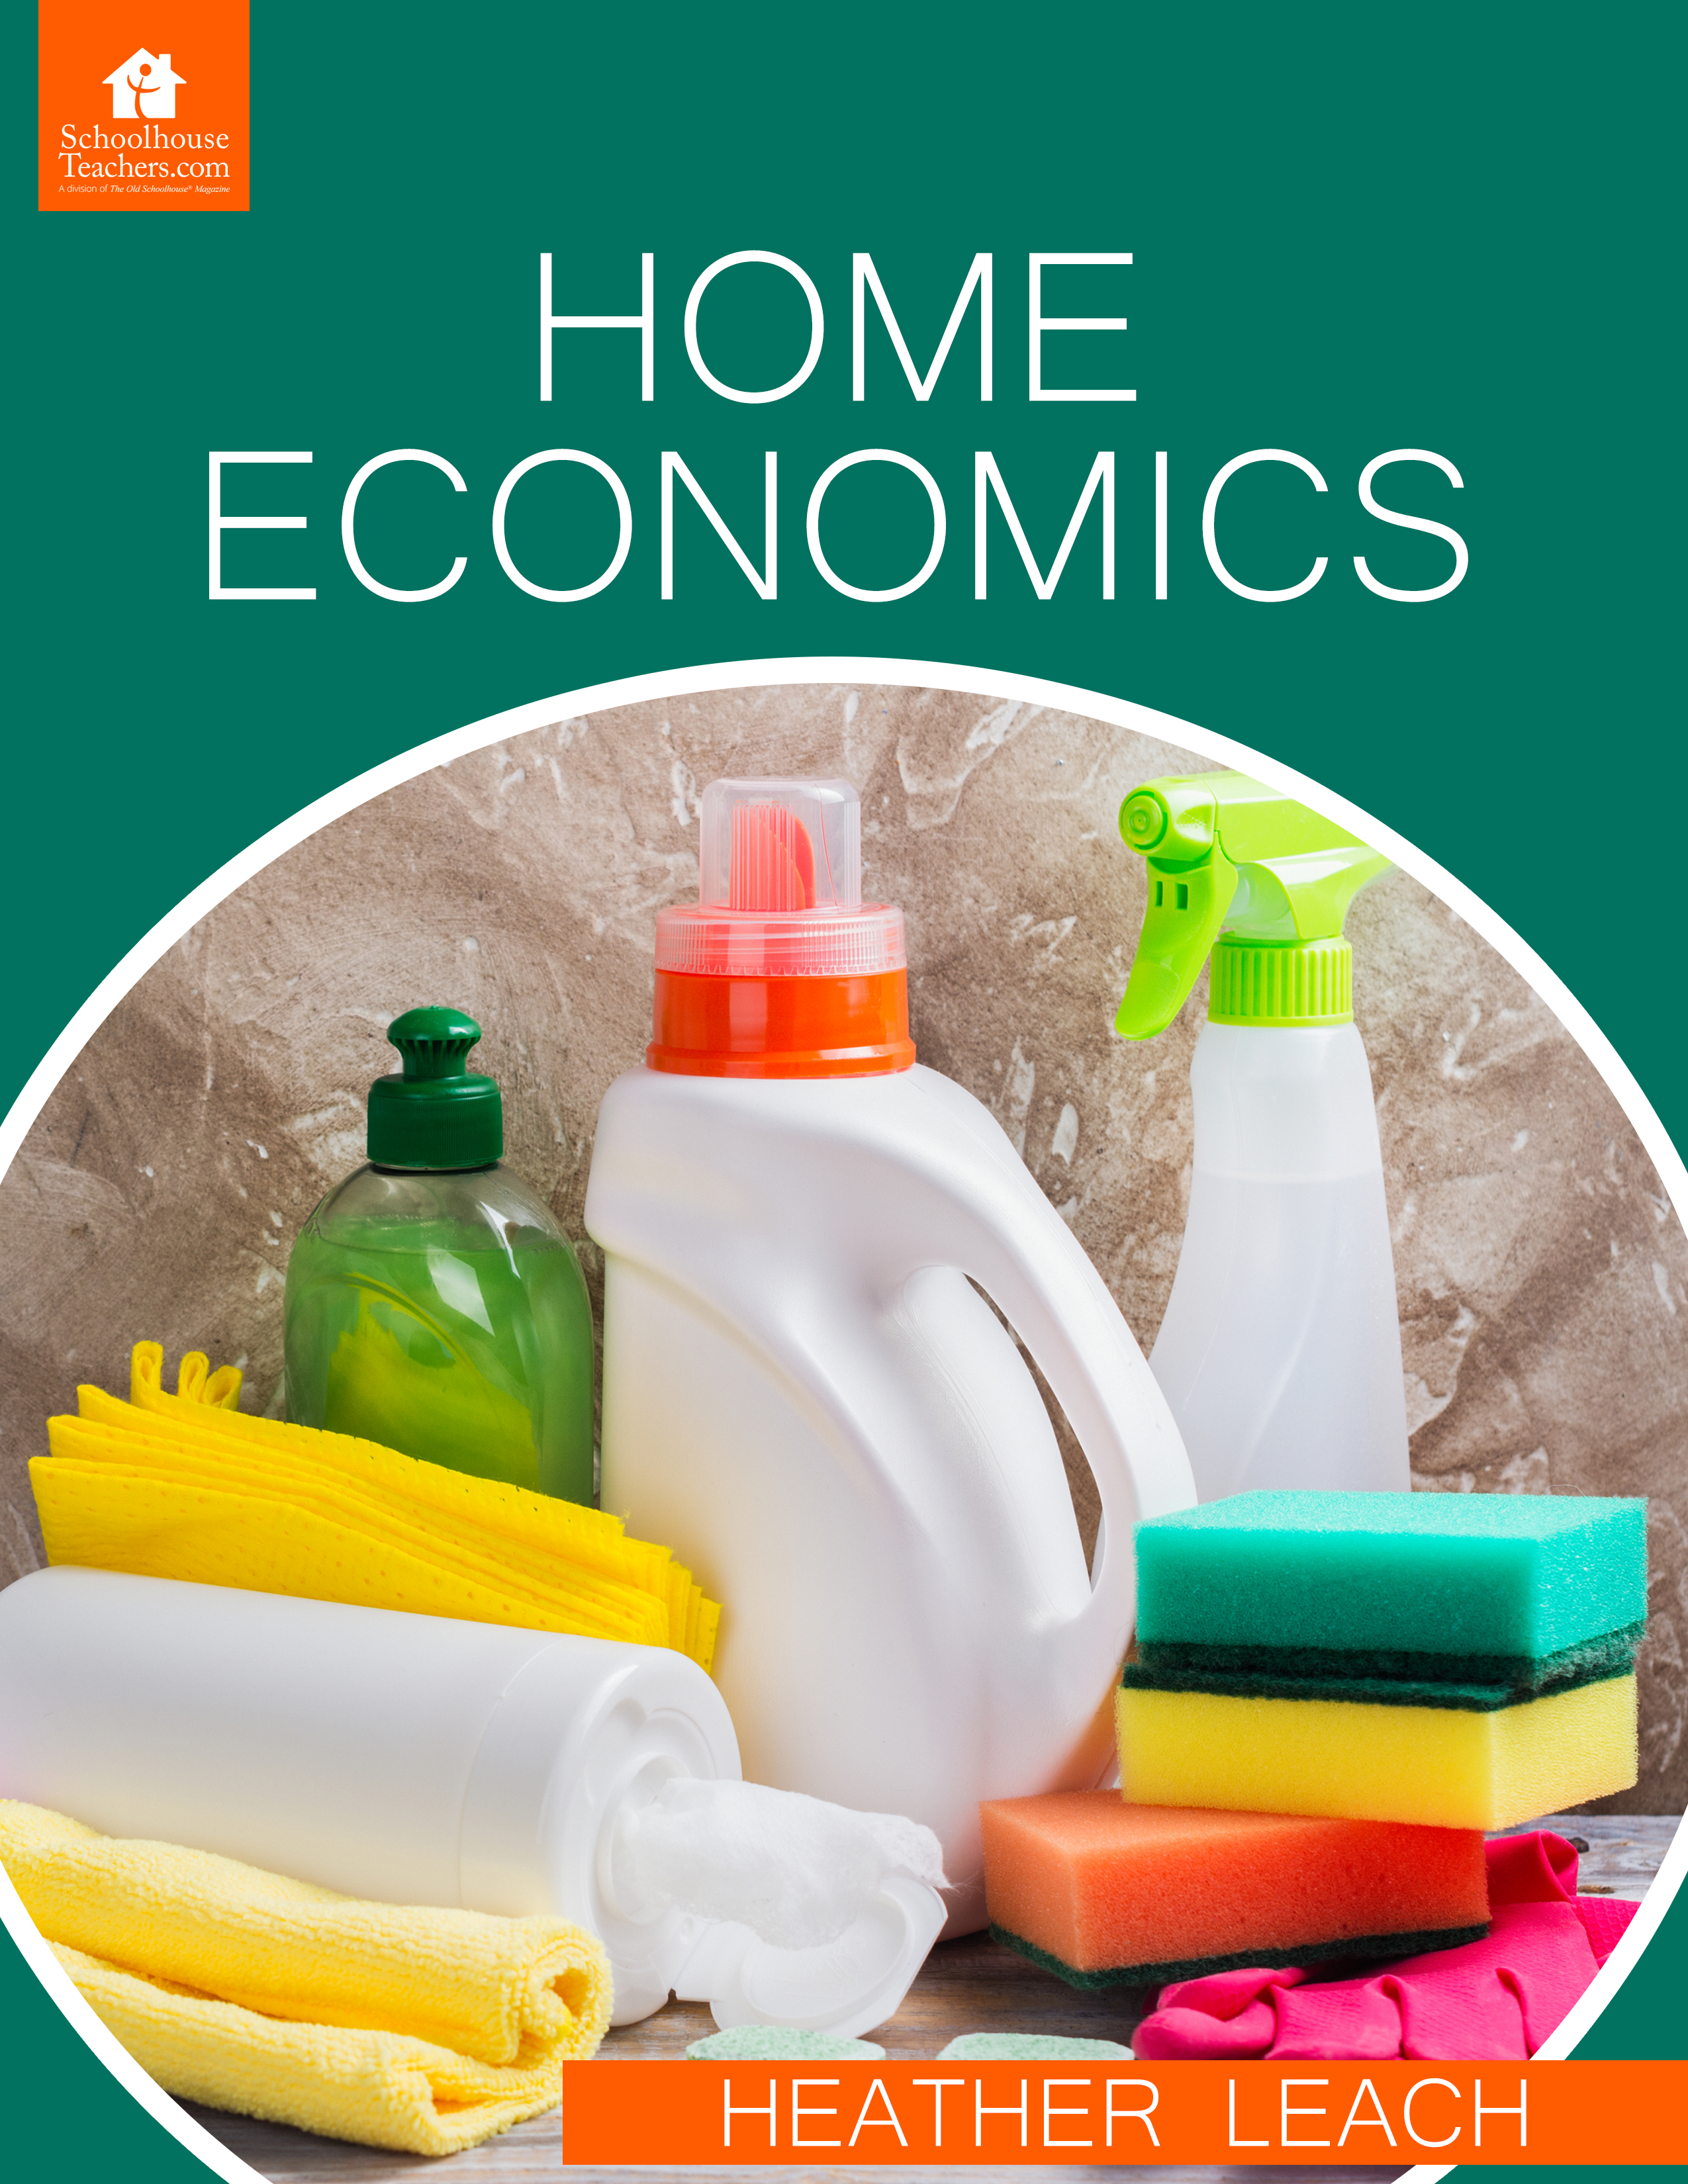 The Home Economist - HomeEc@Home